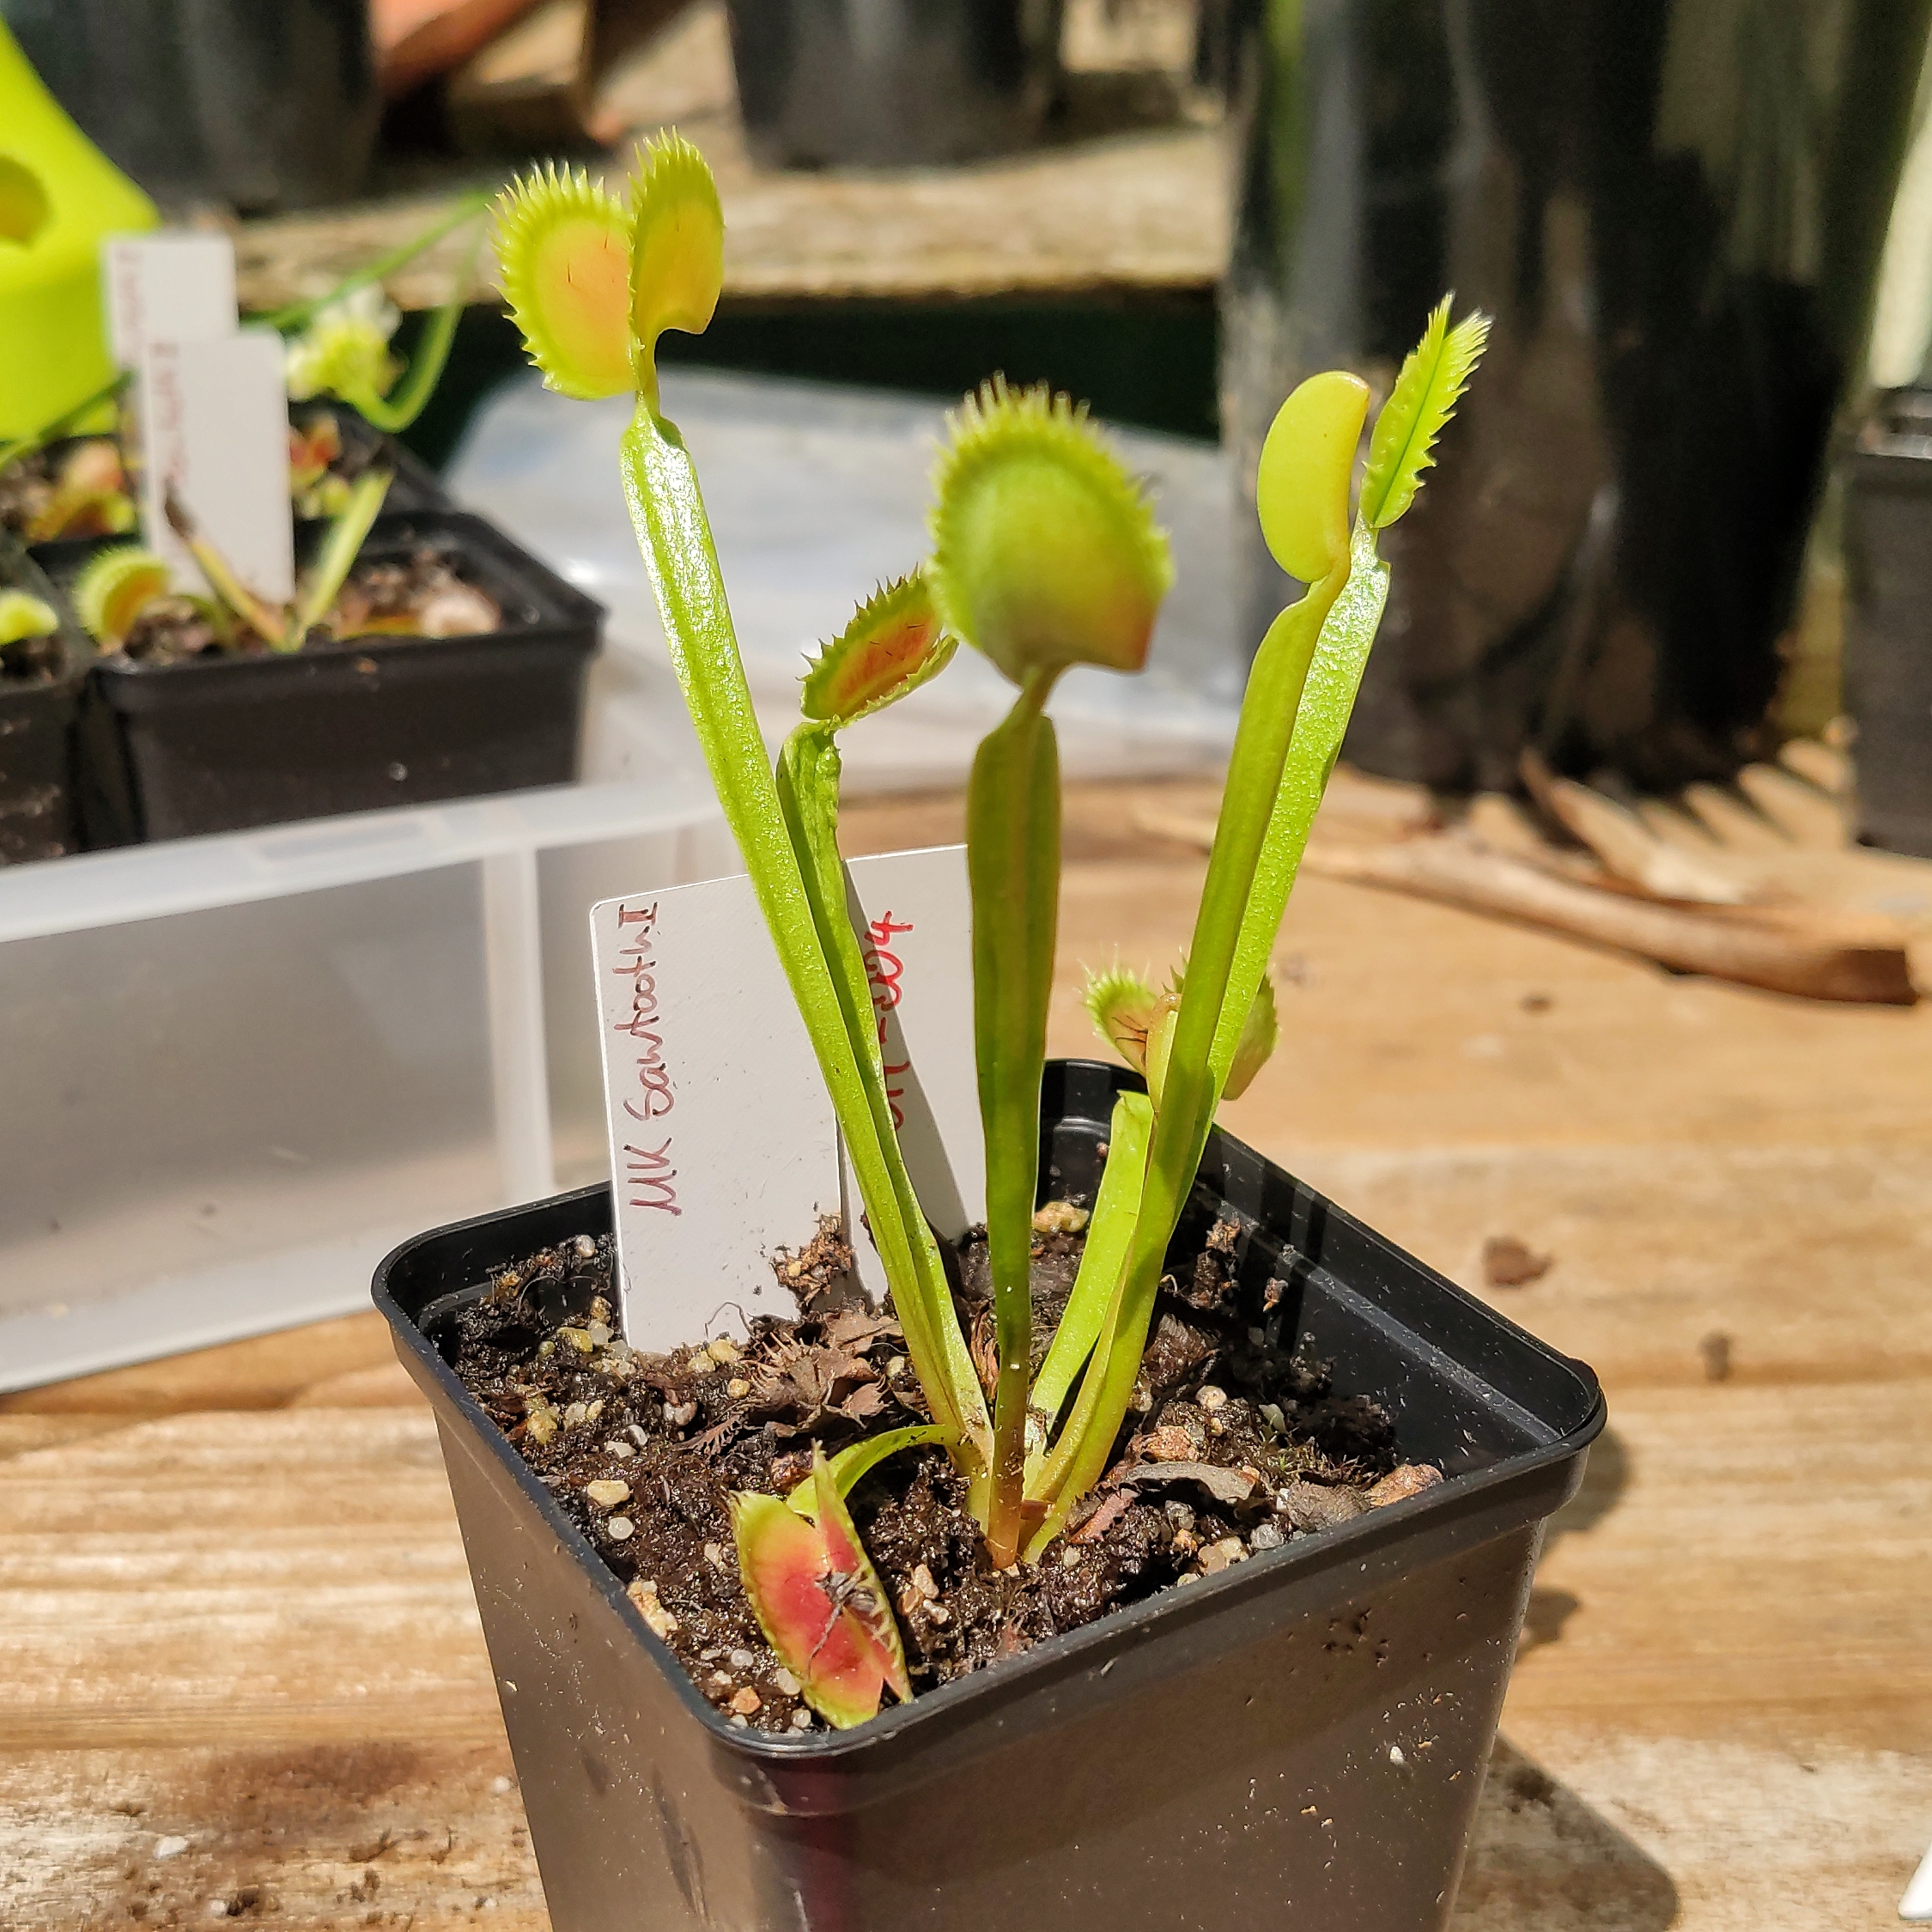 Dionaea muscipula "Dingley Giant" fleischfressende Pflanzen,karnivoren 